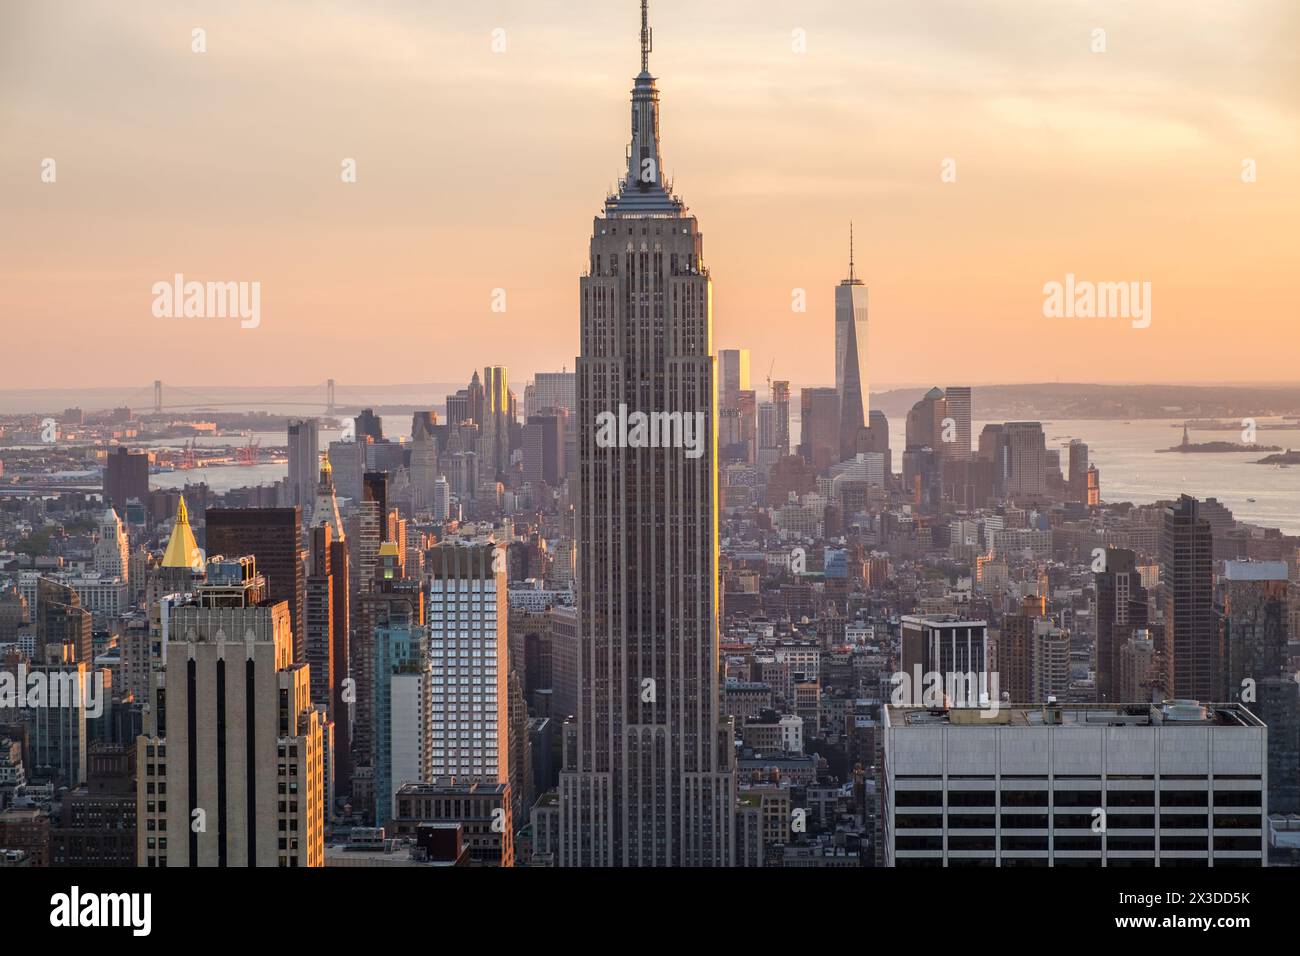 Vue de l'Empire State Building et des gratte-ciel de Manhattan, Manhattan, New York, États-Unis Banque D'Images